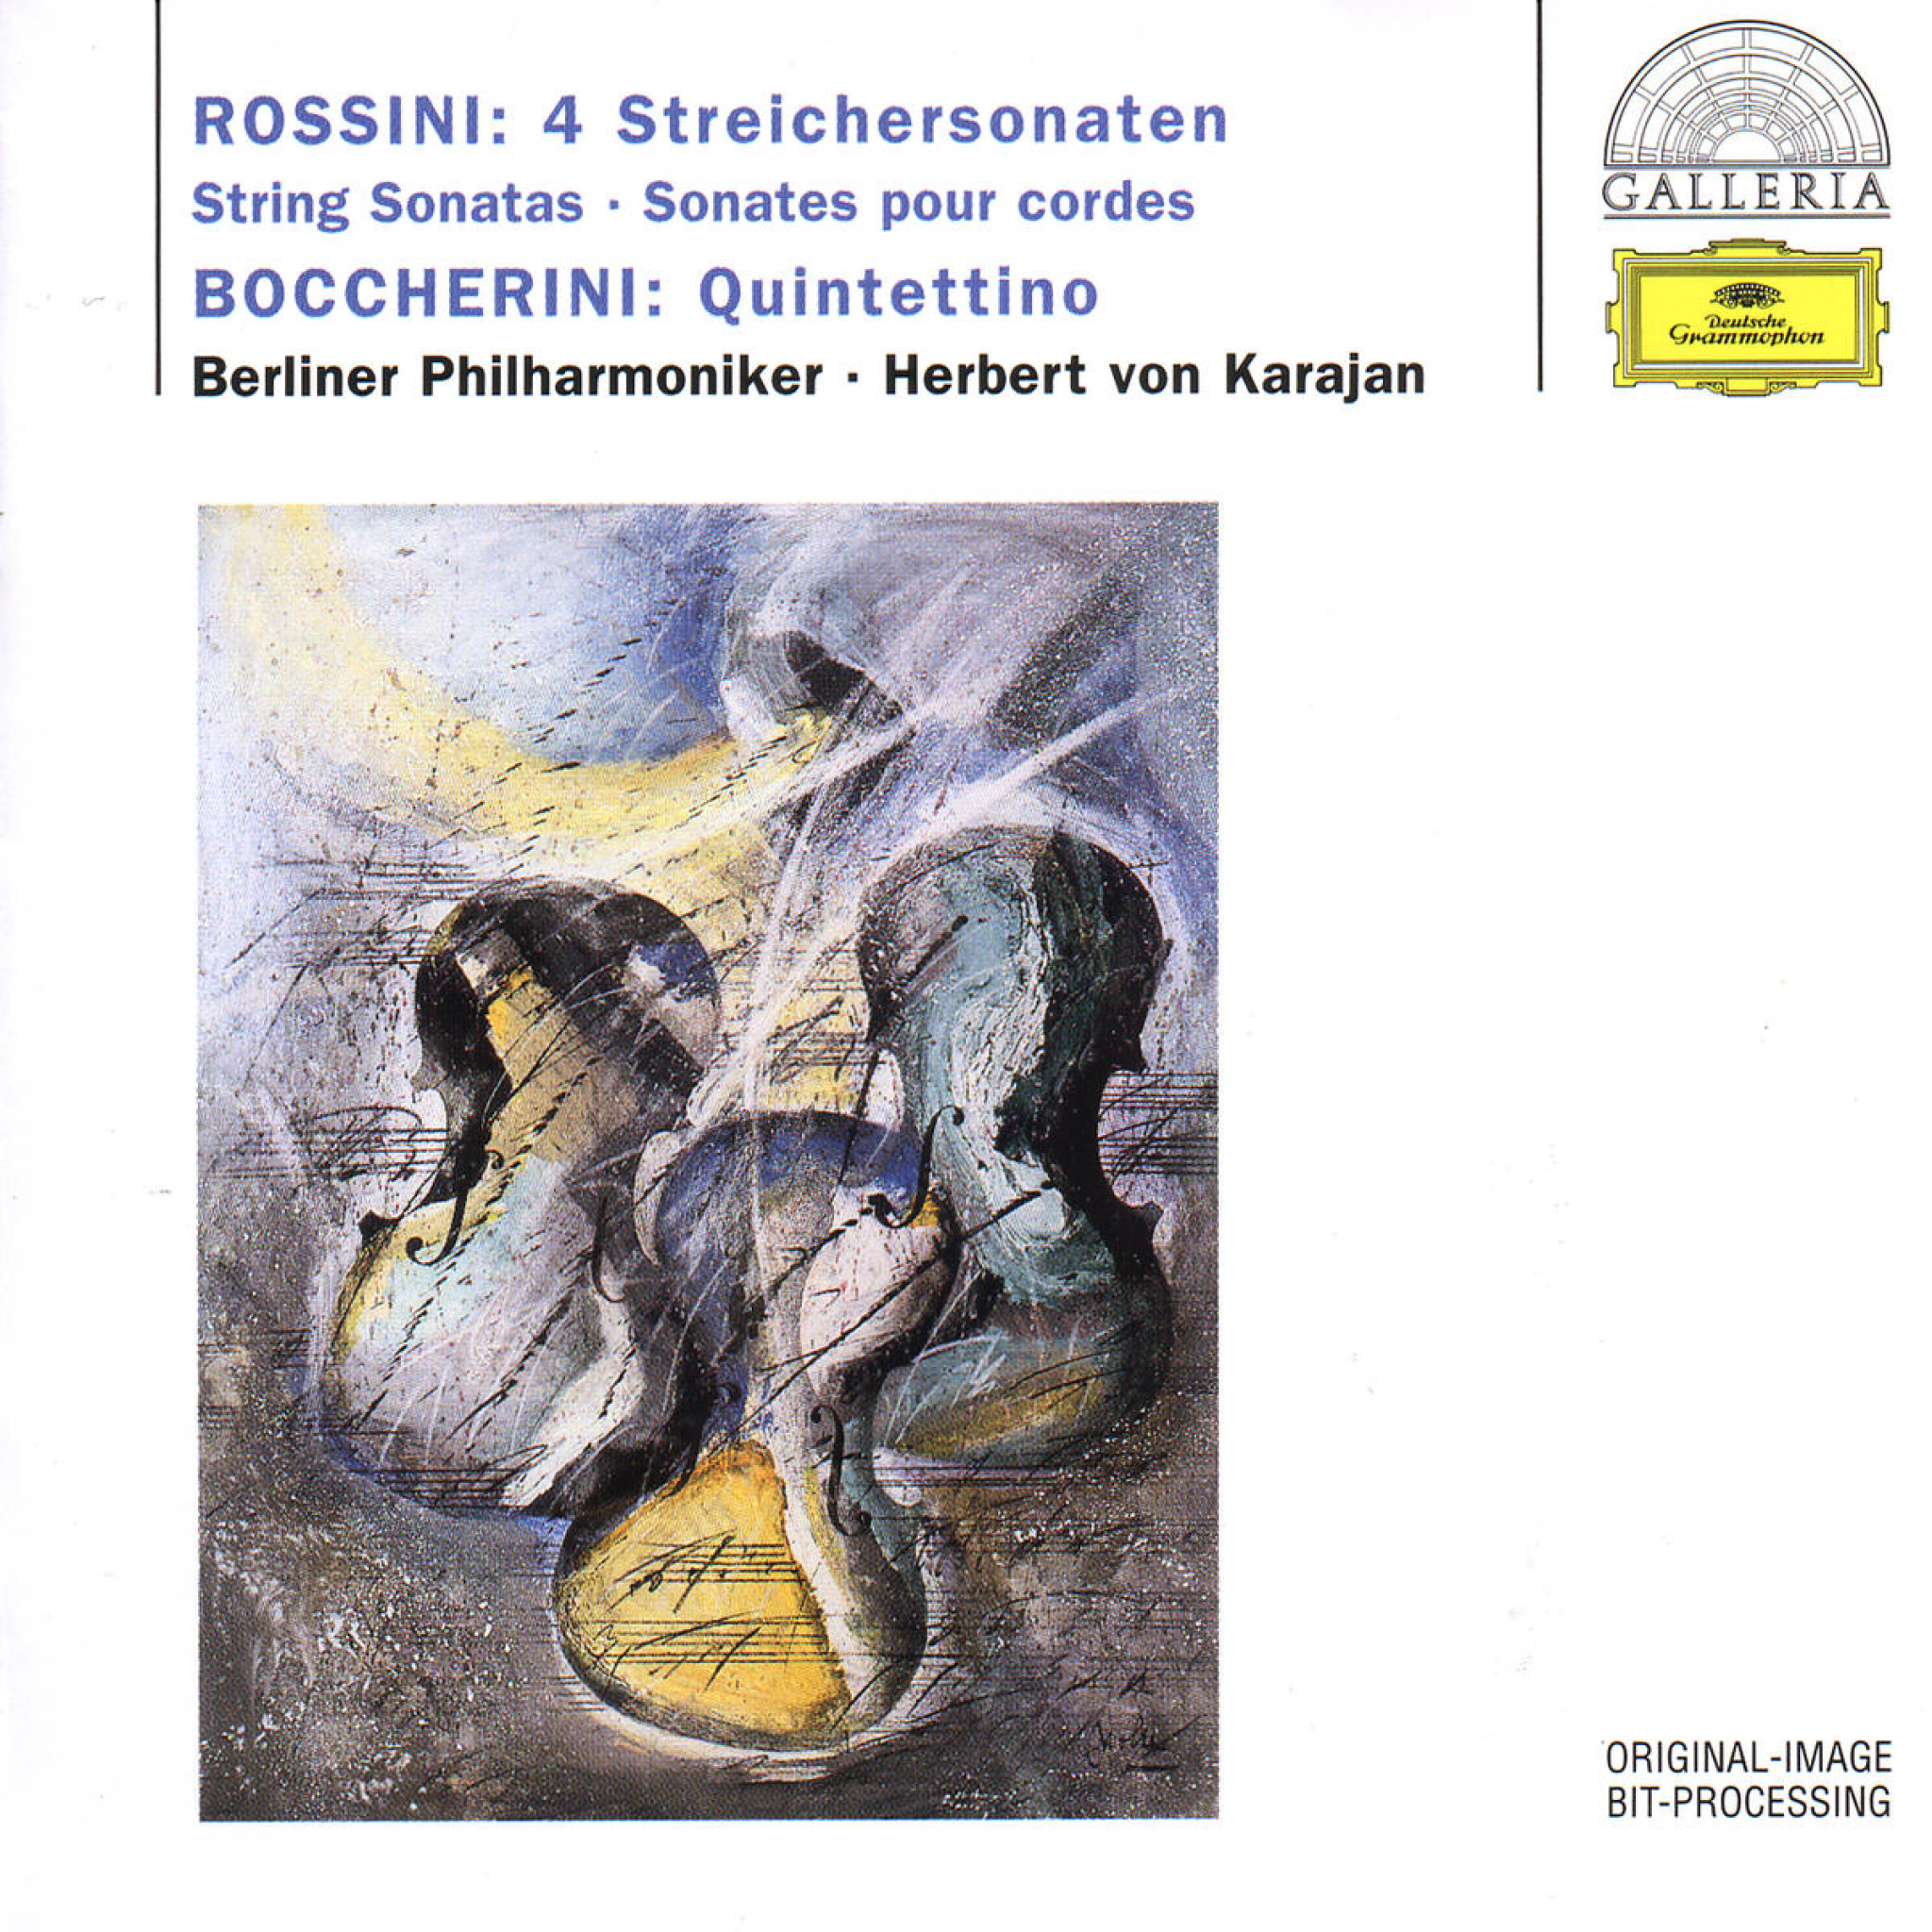 ROSSINI Sonatas for Strings + BOCCHERINI / Karajan